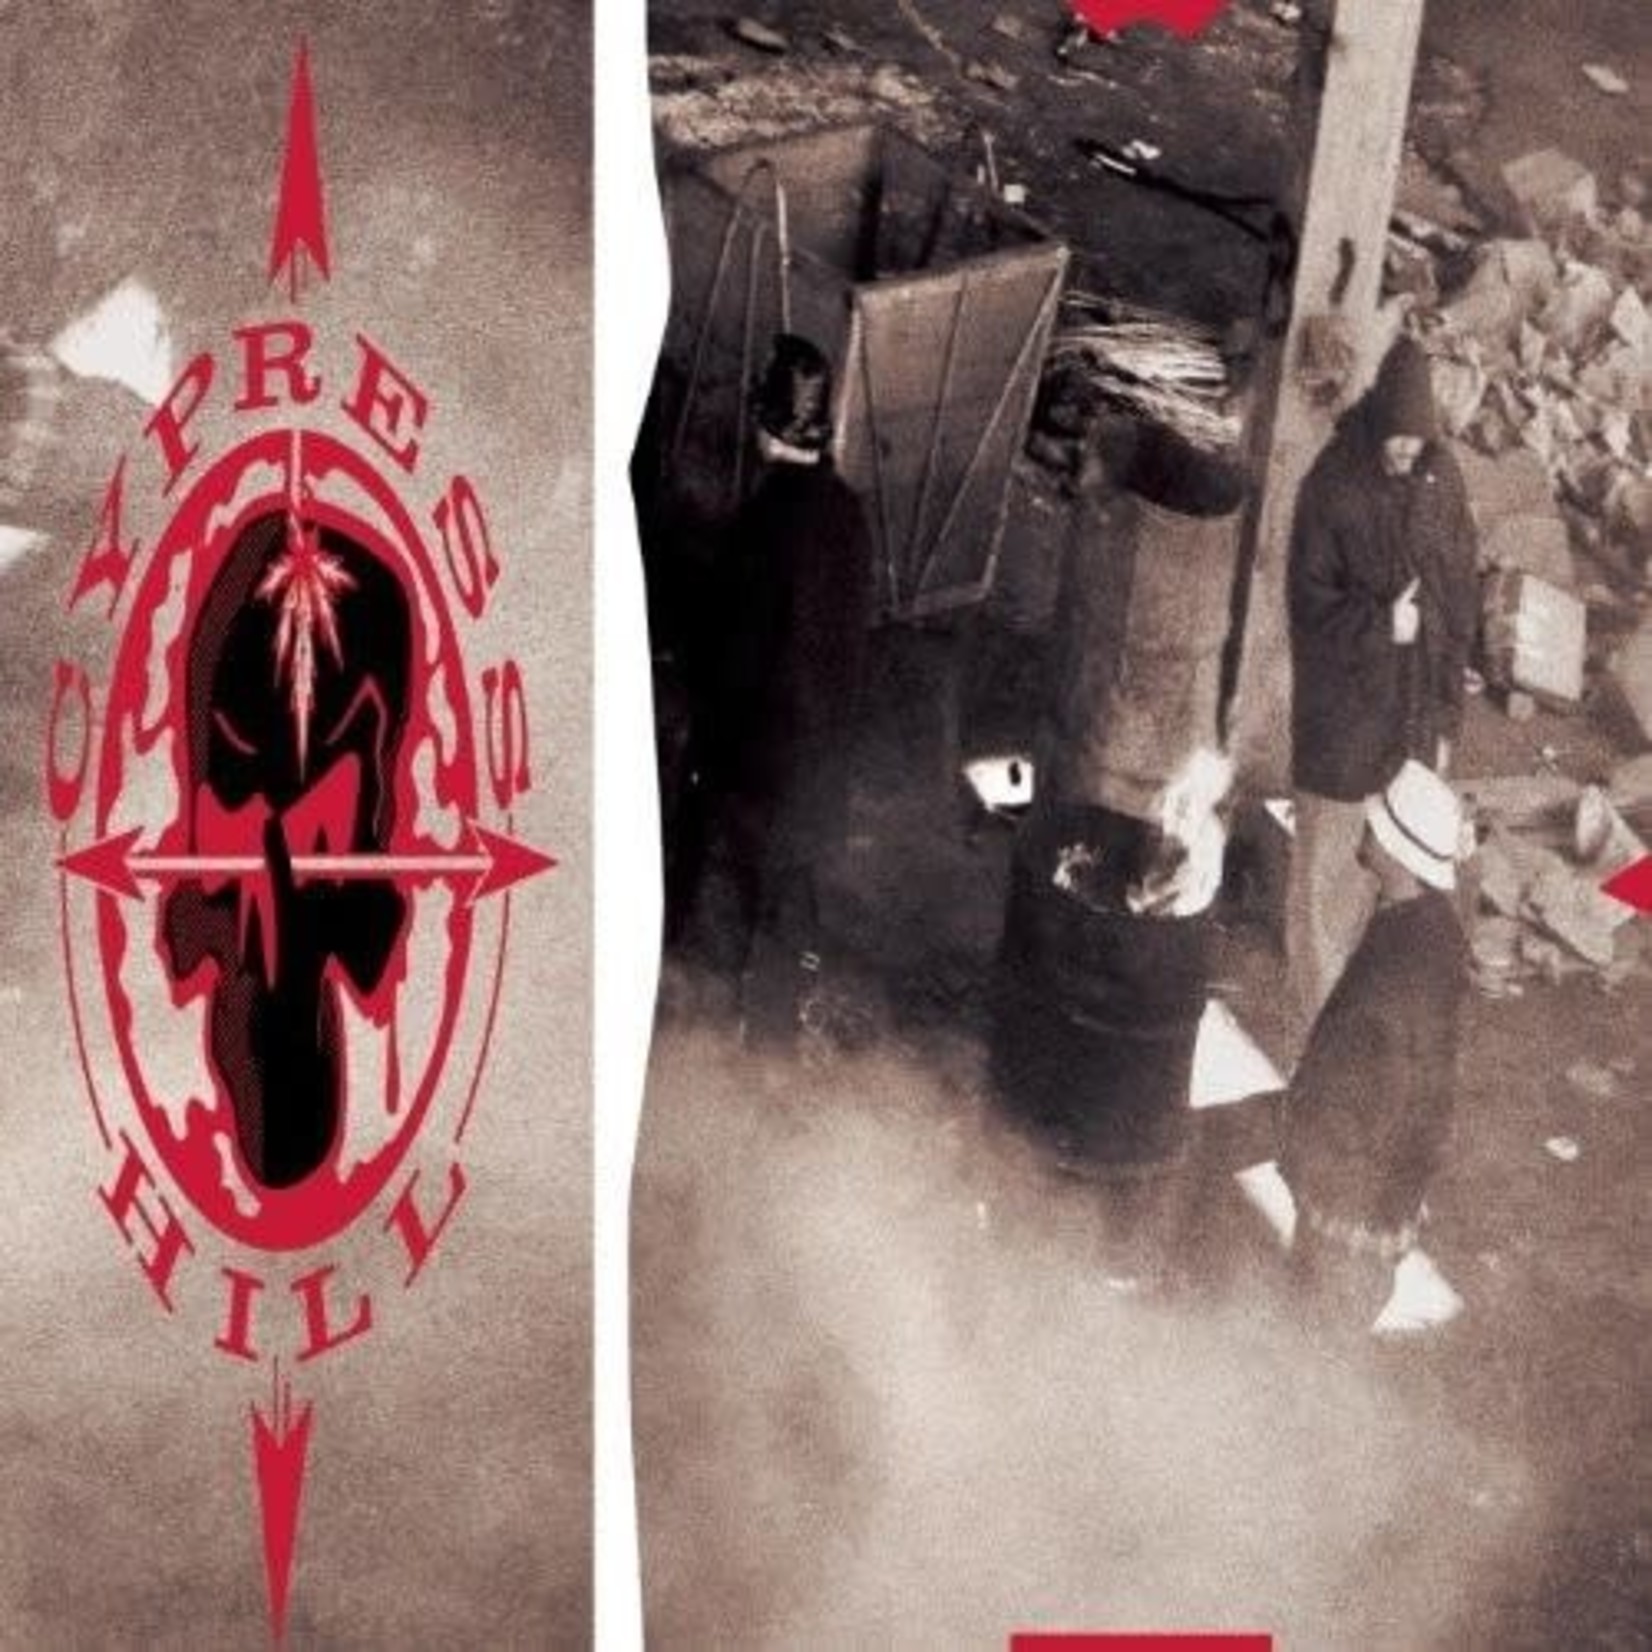 Cypress Hill - Cypress Hill [LP]